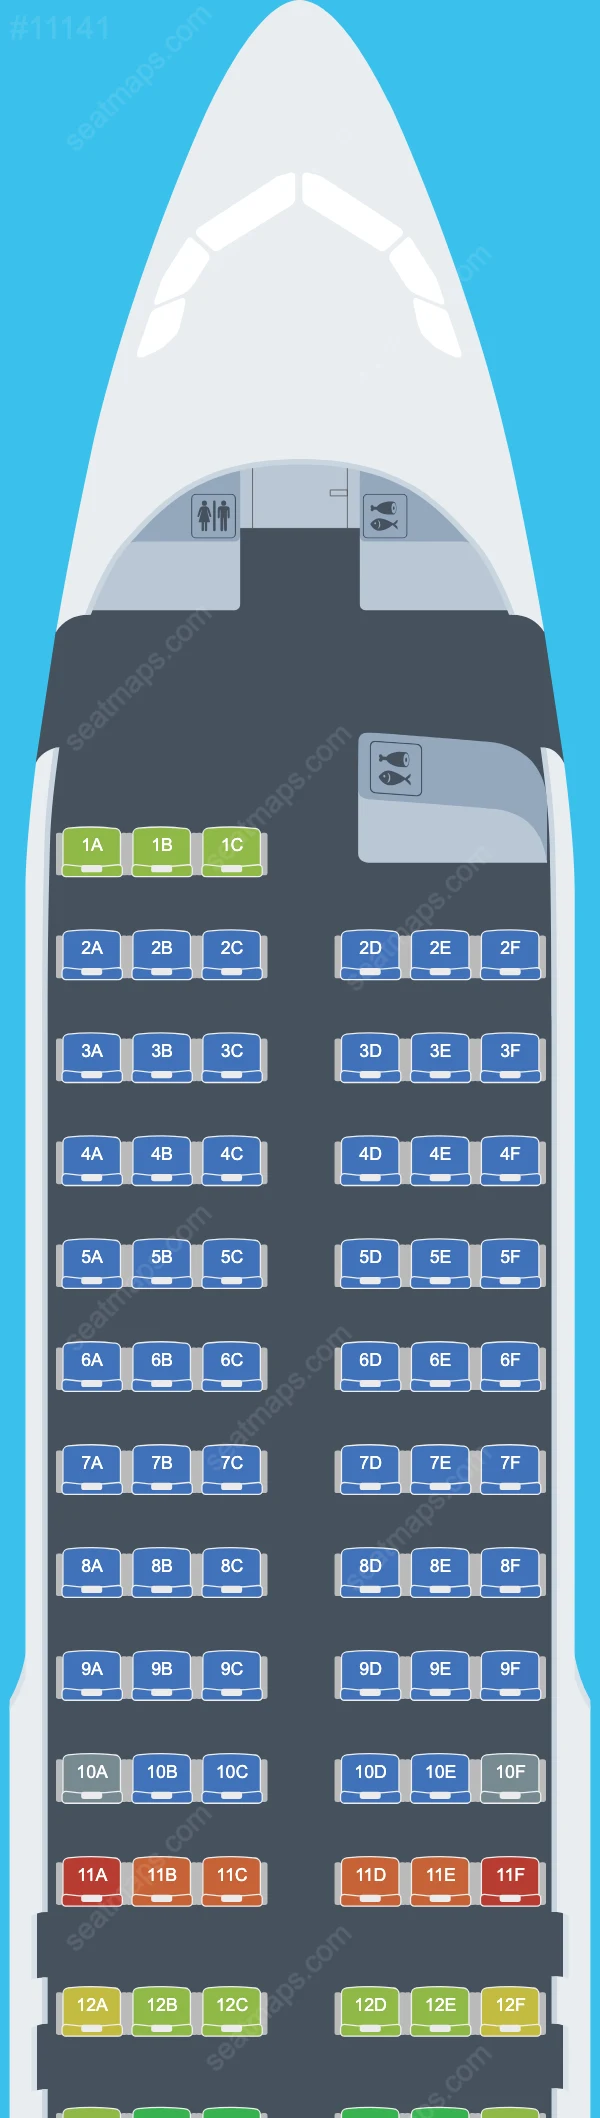 BA Euroflyer Airbus A320 Seat Maps A320-200